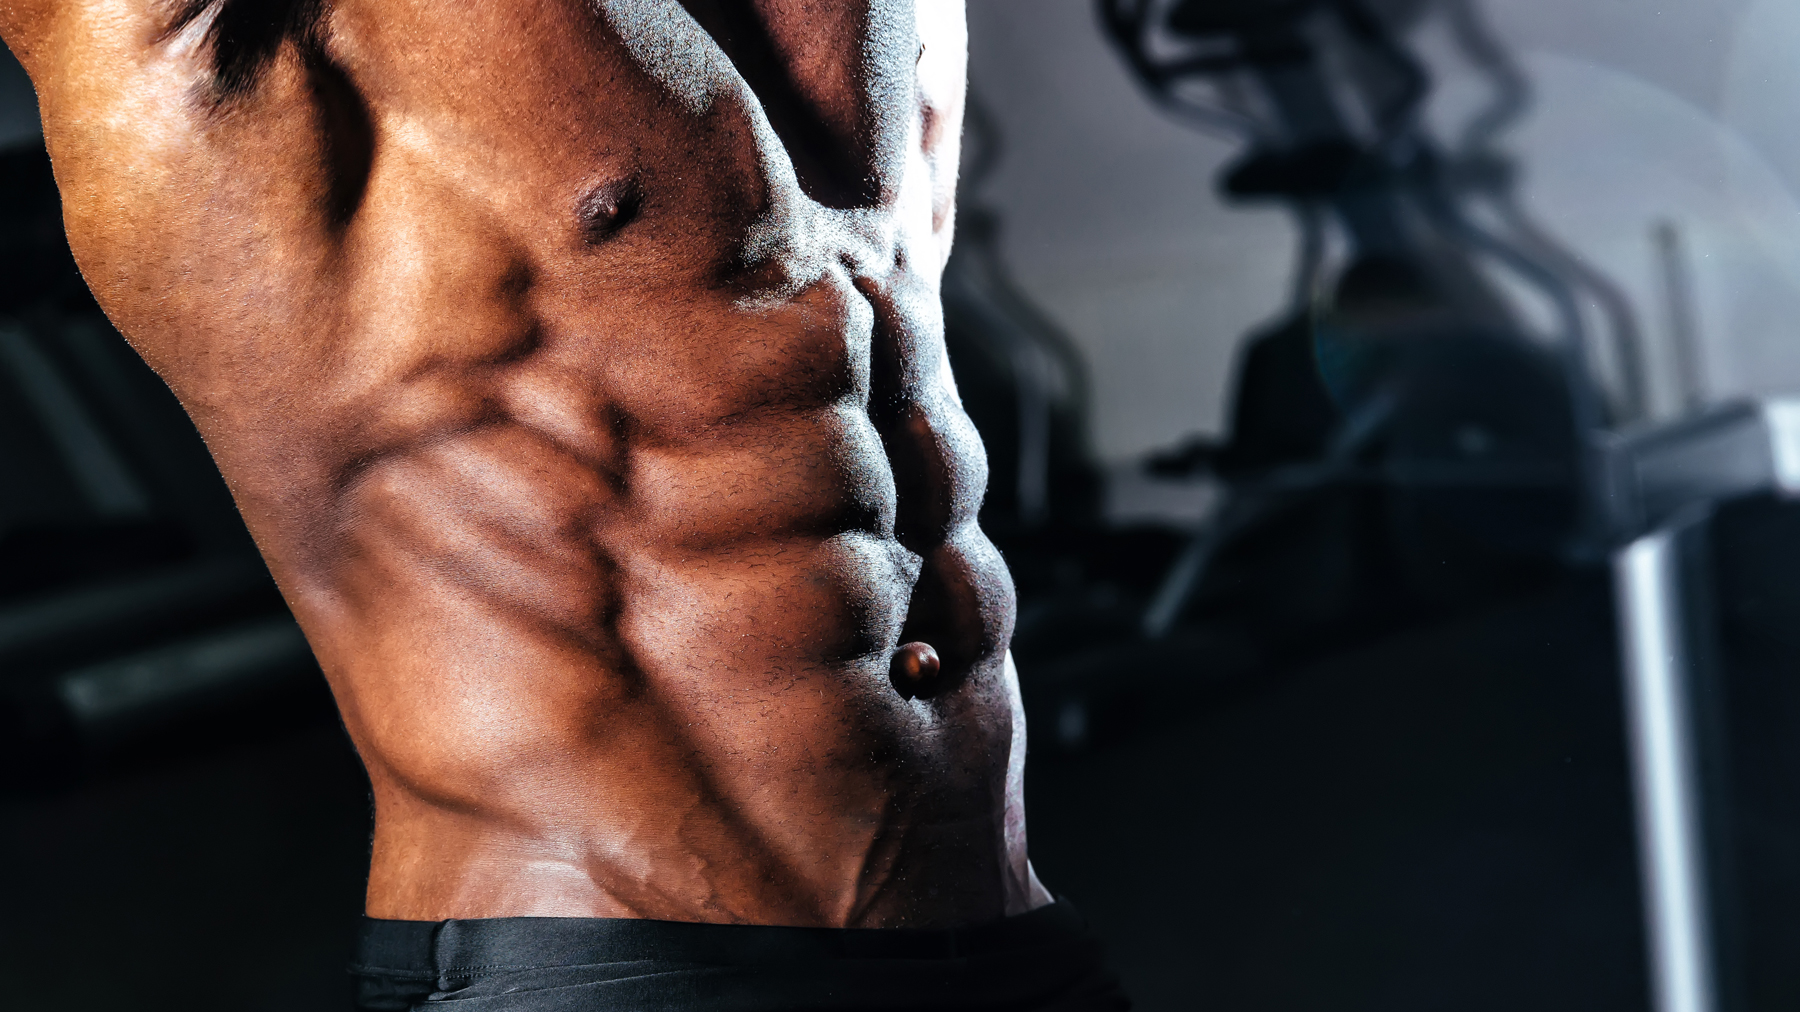 Define your core, sculpt your abs at UFC Gym. 💪🏻 Unleash your